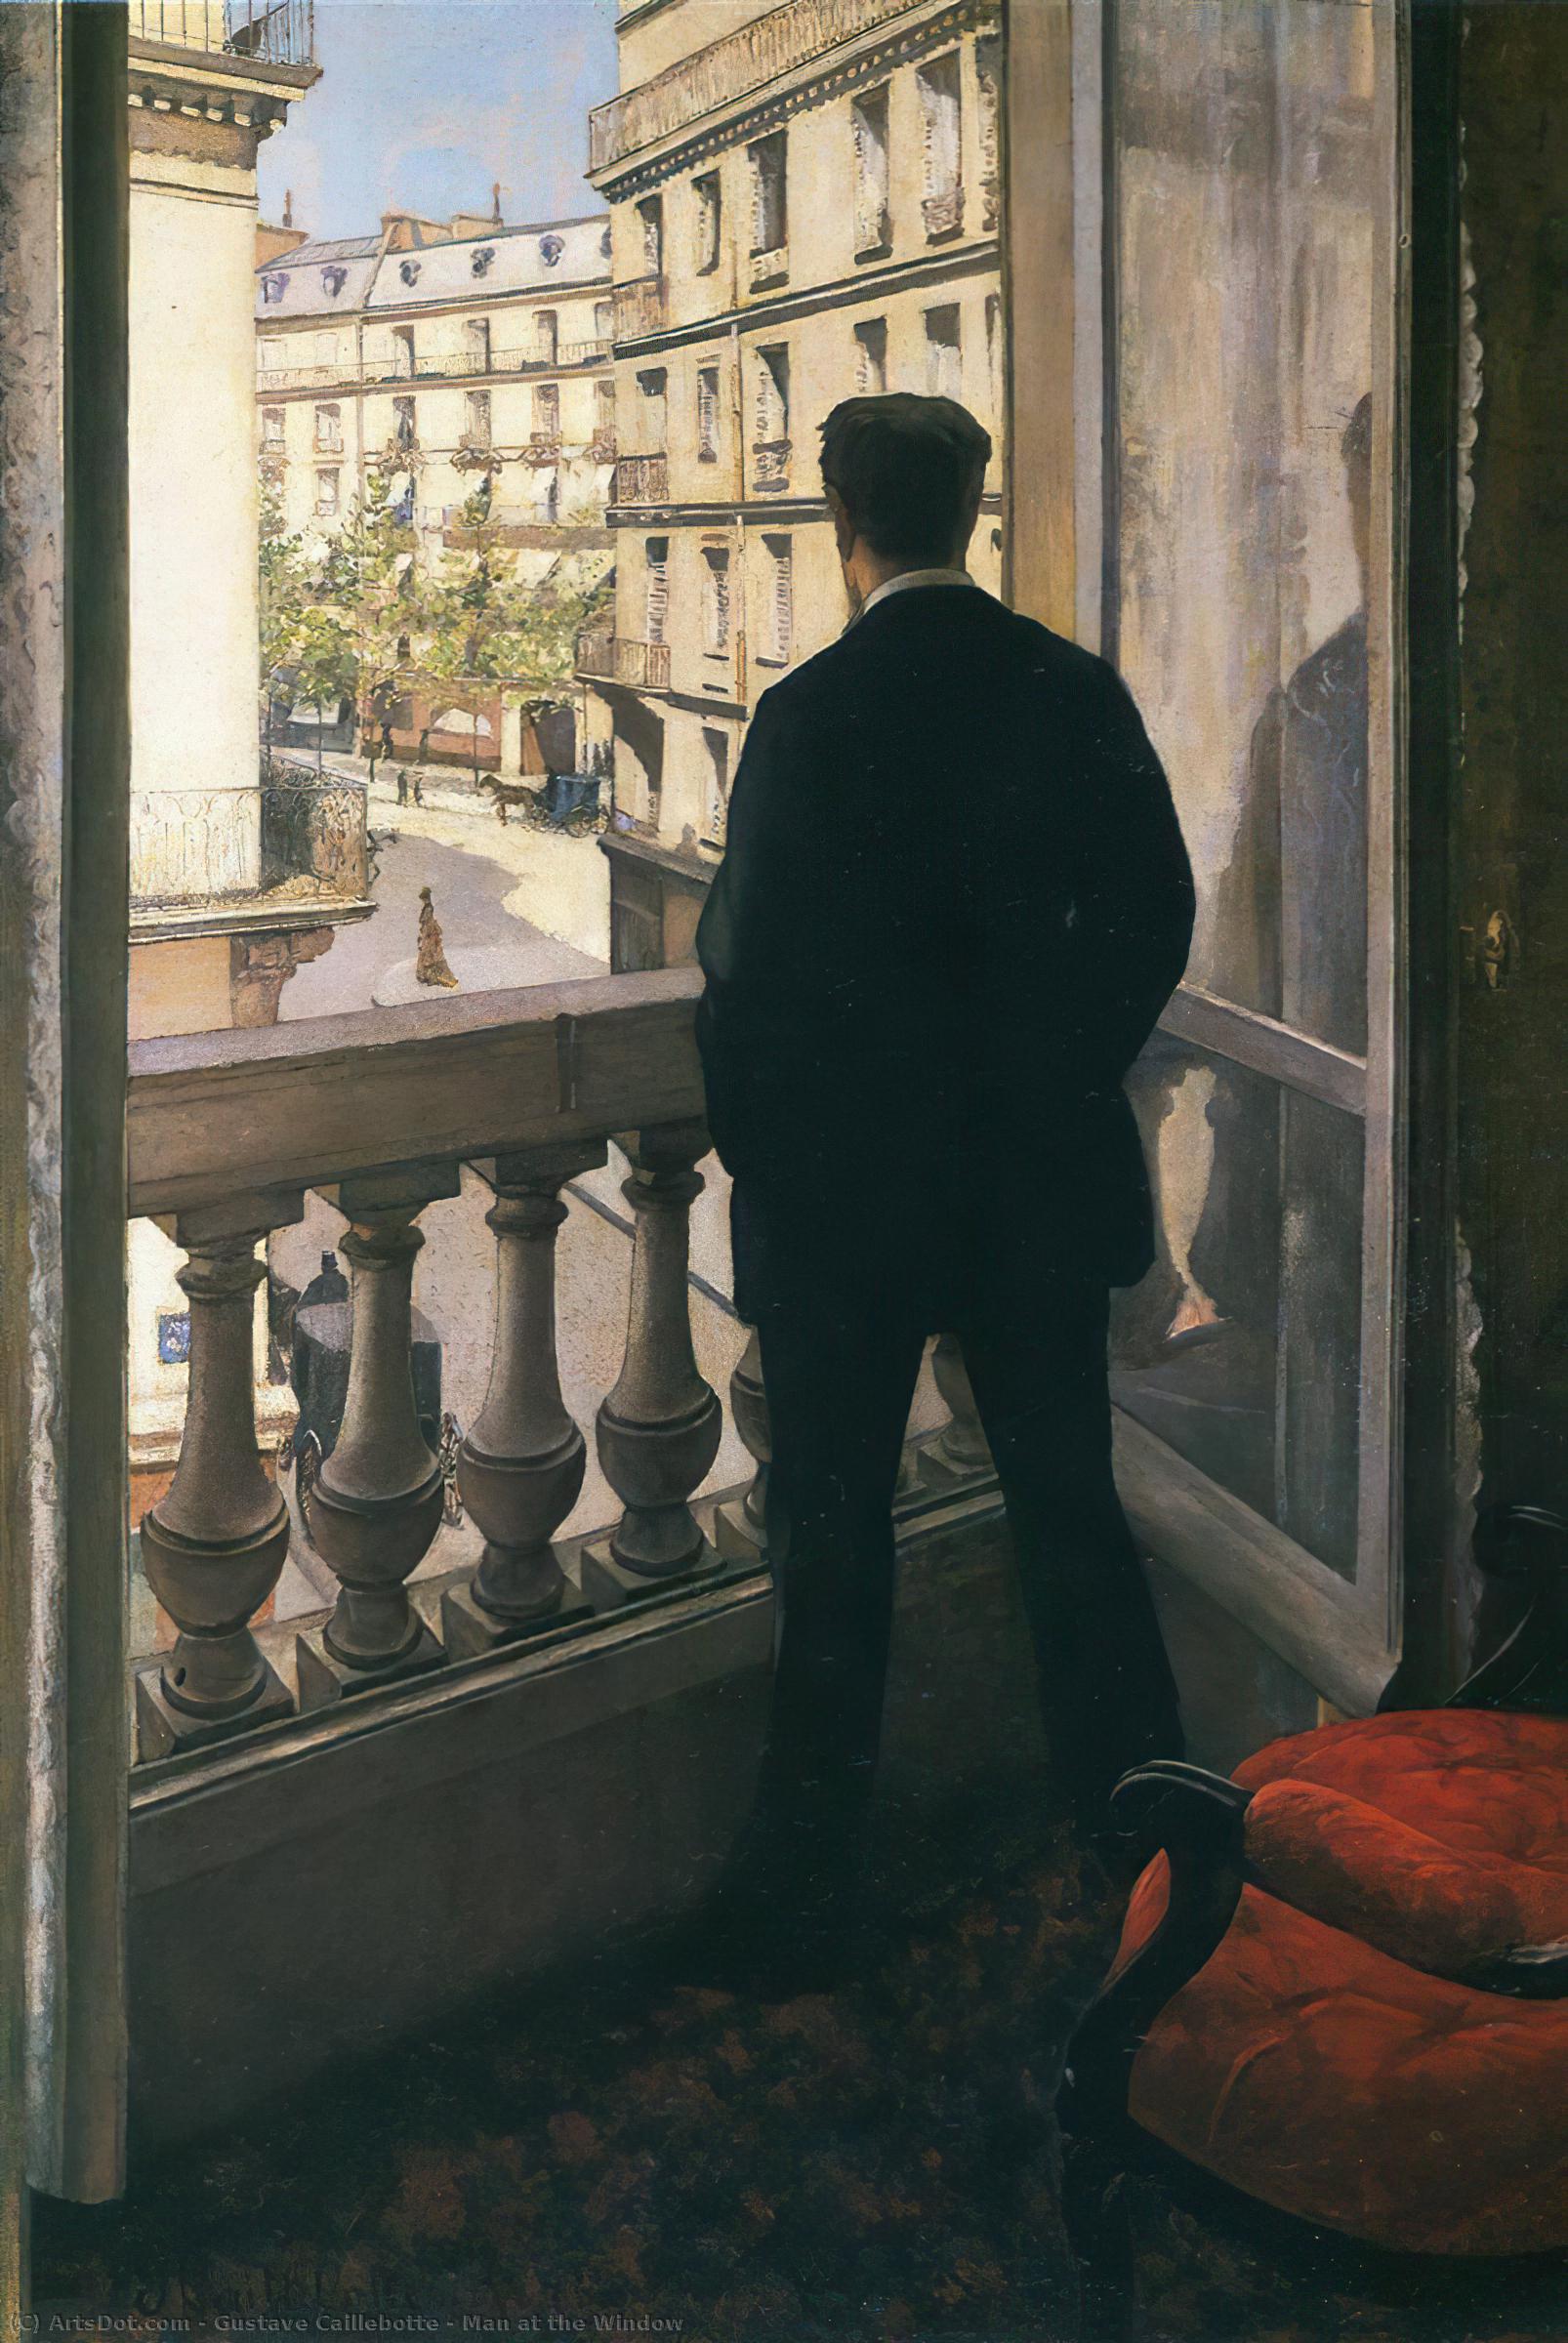 Comprar Reproducciones De Arte Del Museo Hombre en la ventana, 1875 de Gustave Caillebotte (1848-1894, France) | ArtsDot.com